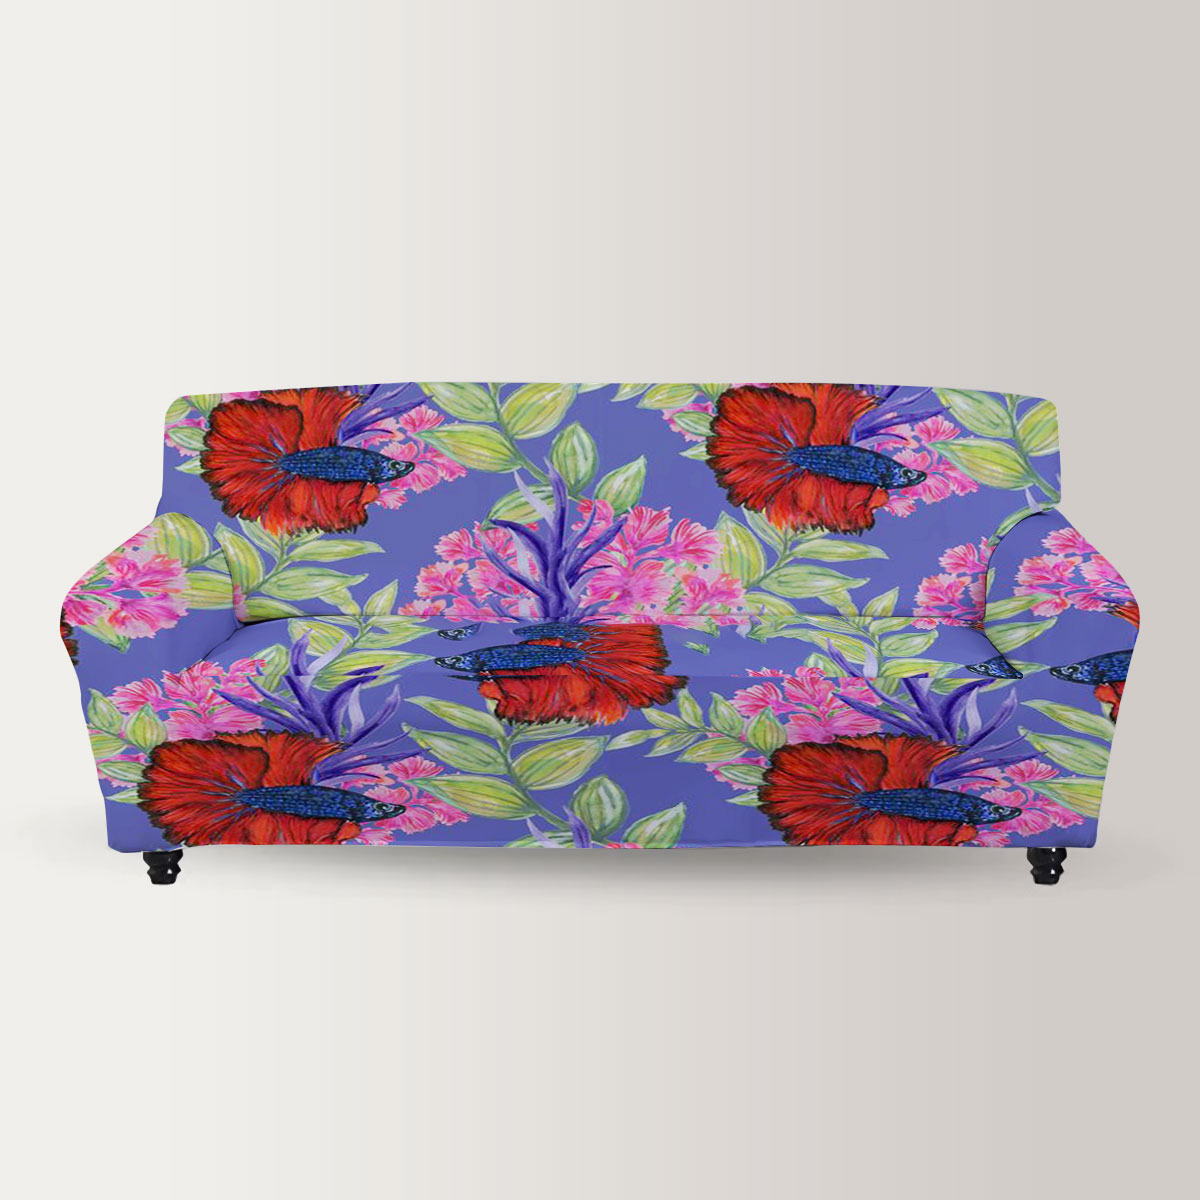 Floral Betta Fish Sofa Cover